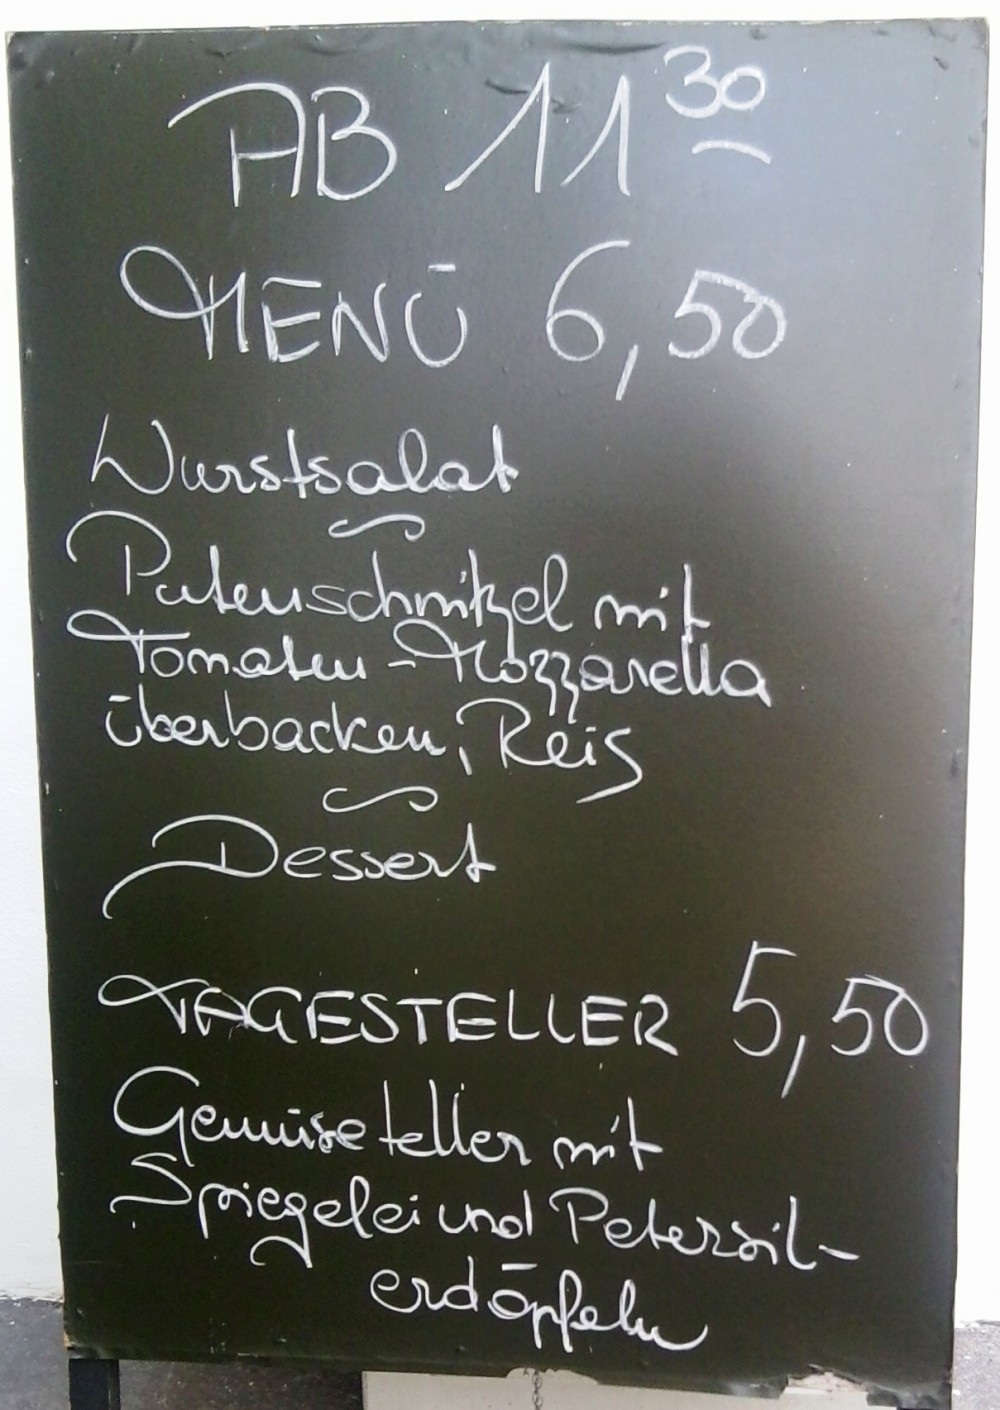 Sixta Tafel Mittagsmenü & Tagesteller - Sixta - Wien